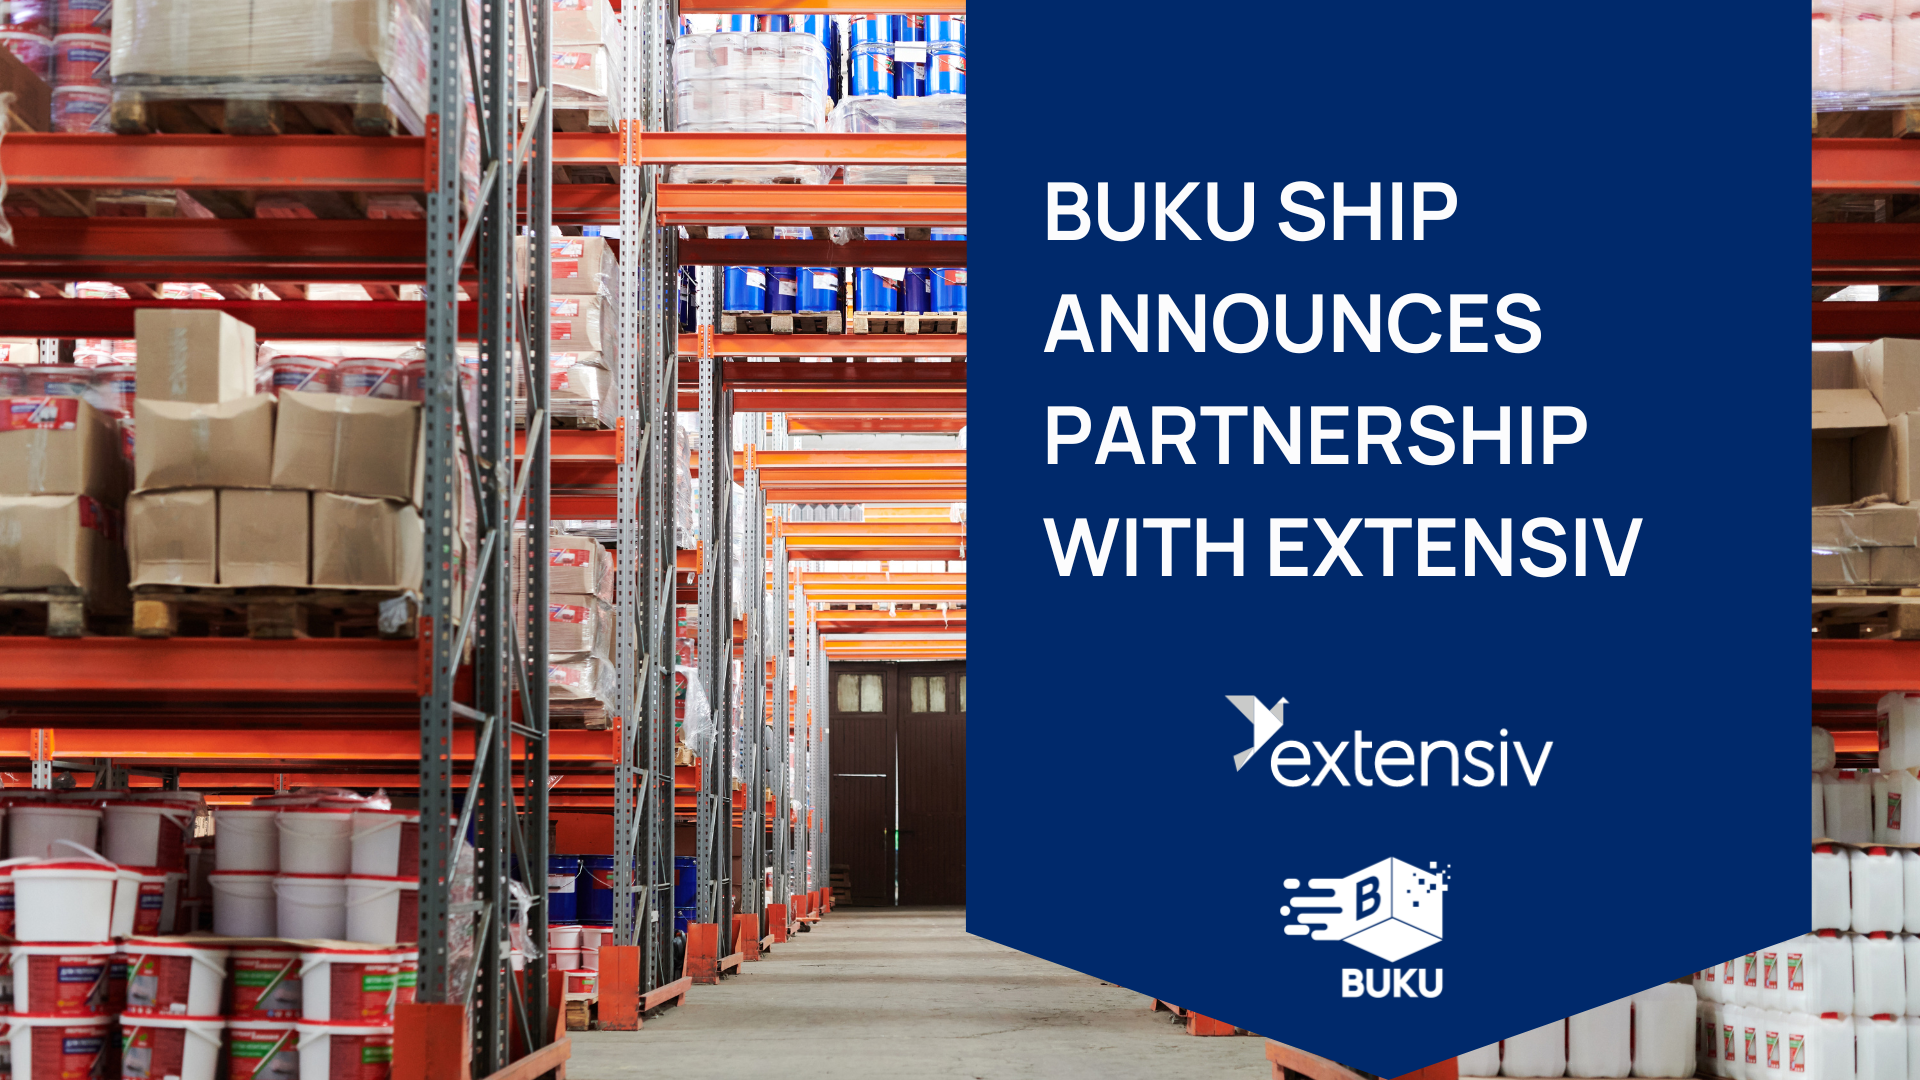 BUKU Extensiv Partnership